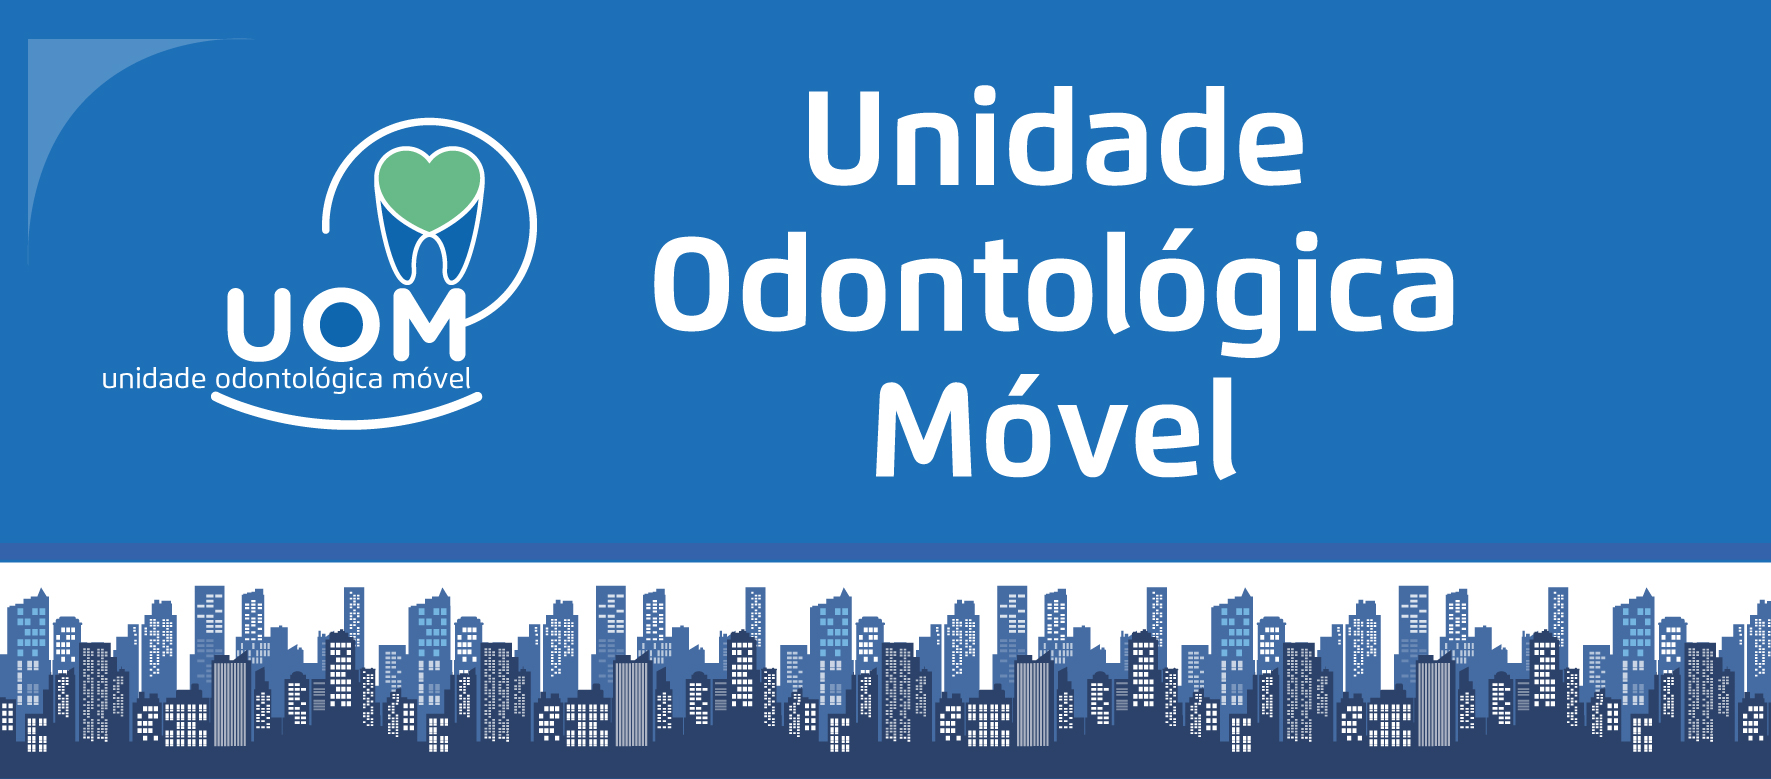 Arte possui fundo azul. Centralizado, o texto em letras brancas: Unidade Odontológica Móvel (UOM). À esquerda, o logo da UOM. No rodapé, faixa ilustrada com ícones de prédios da cidade de São Paulo.